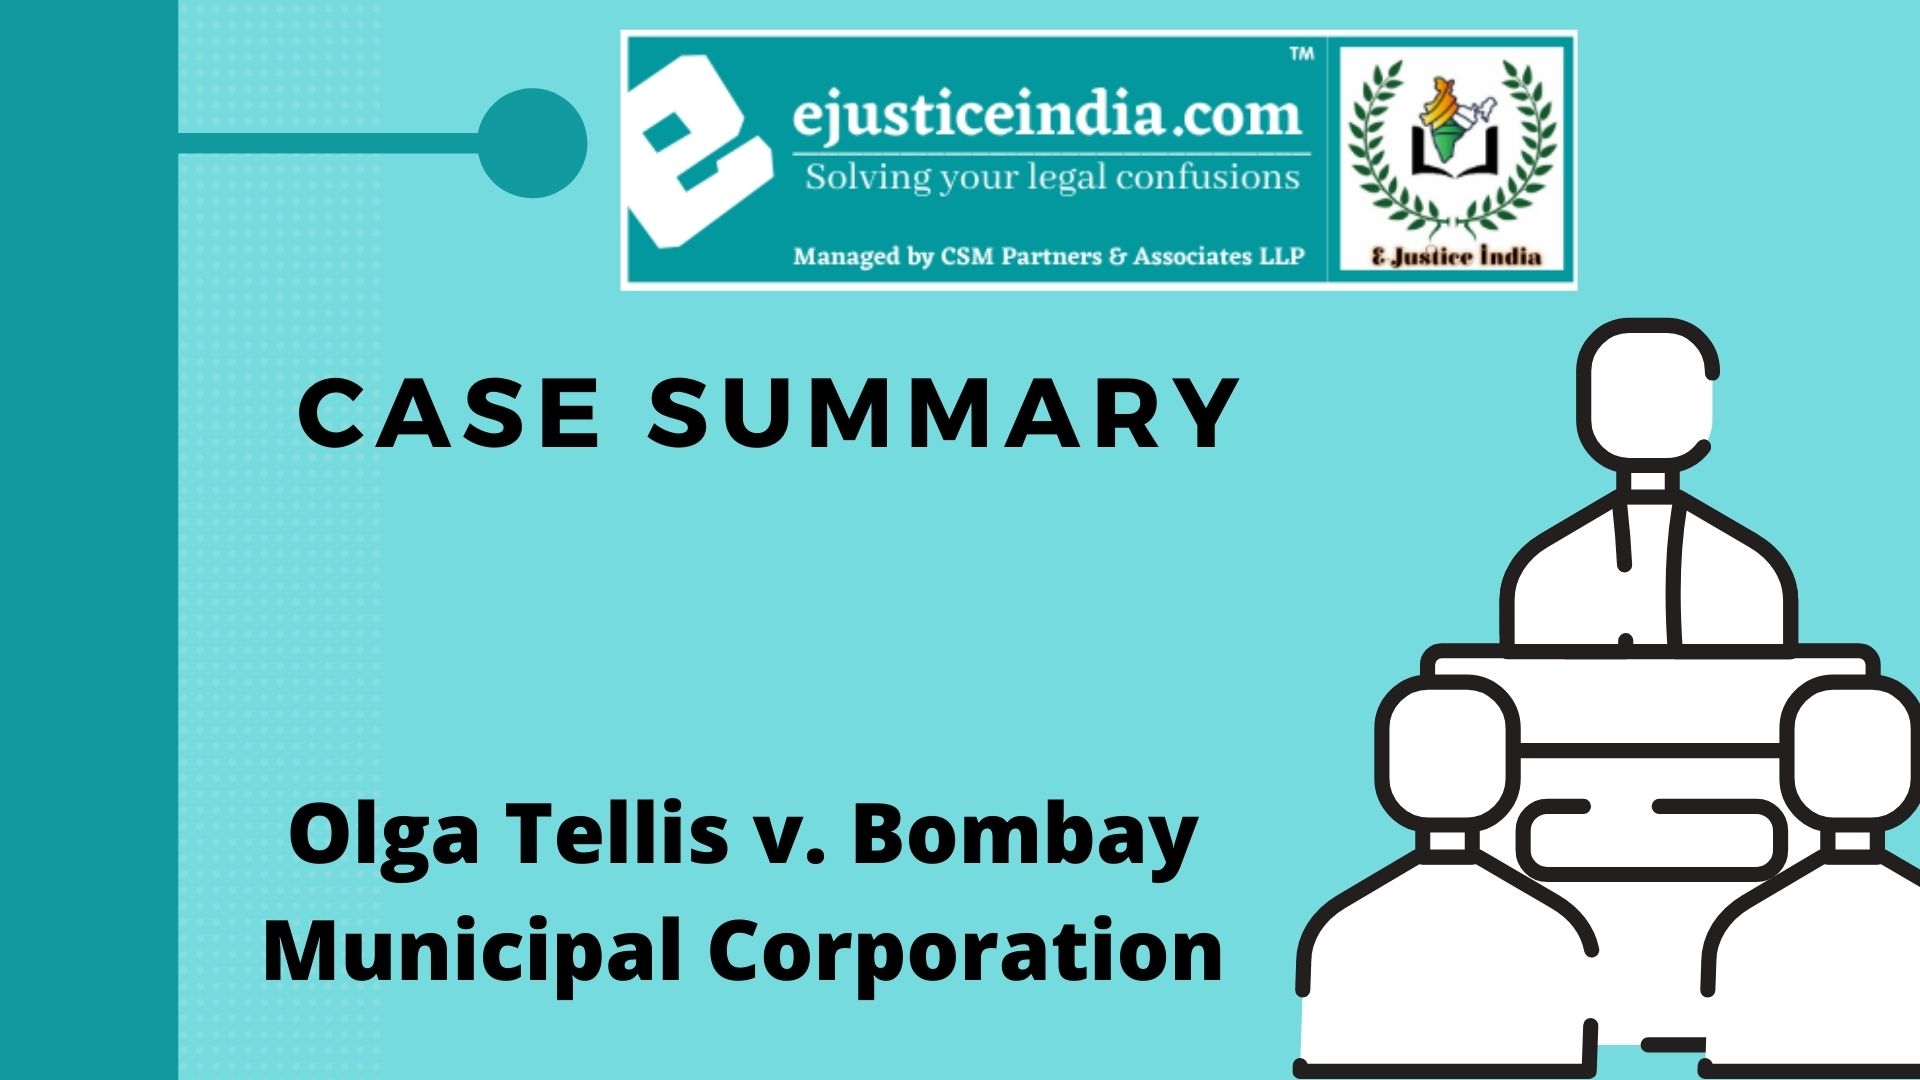 Olga Tellis v. Bombay Municipal Corporation